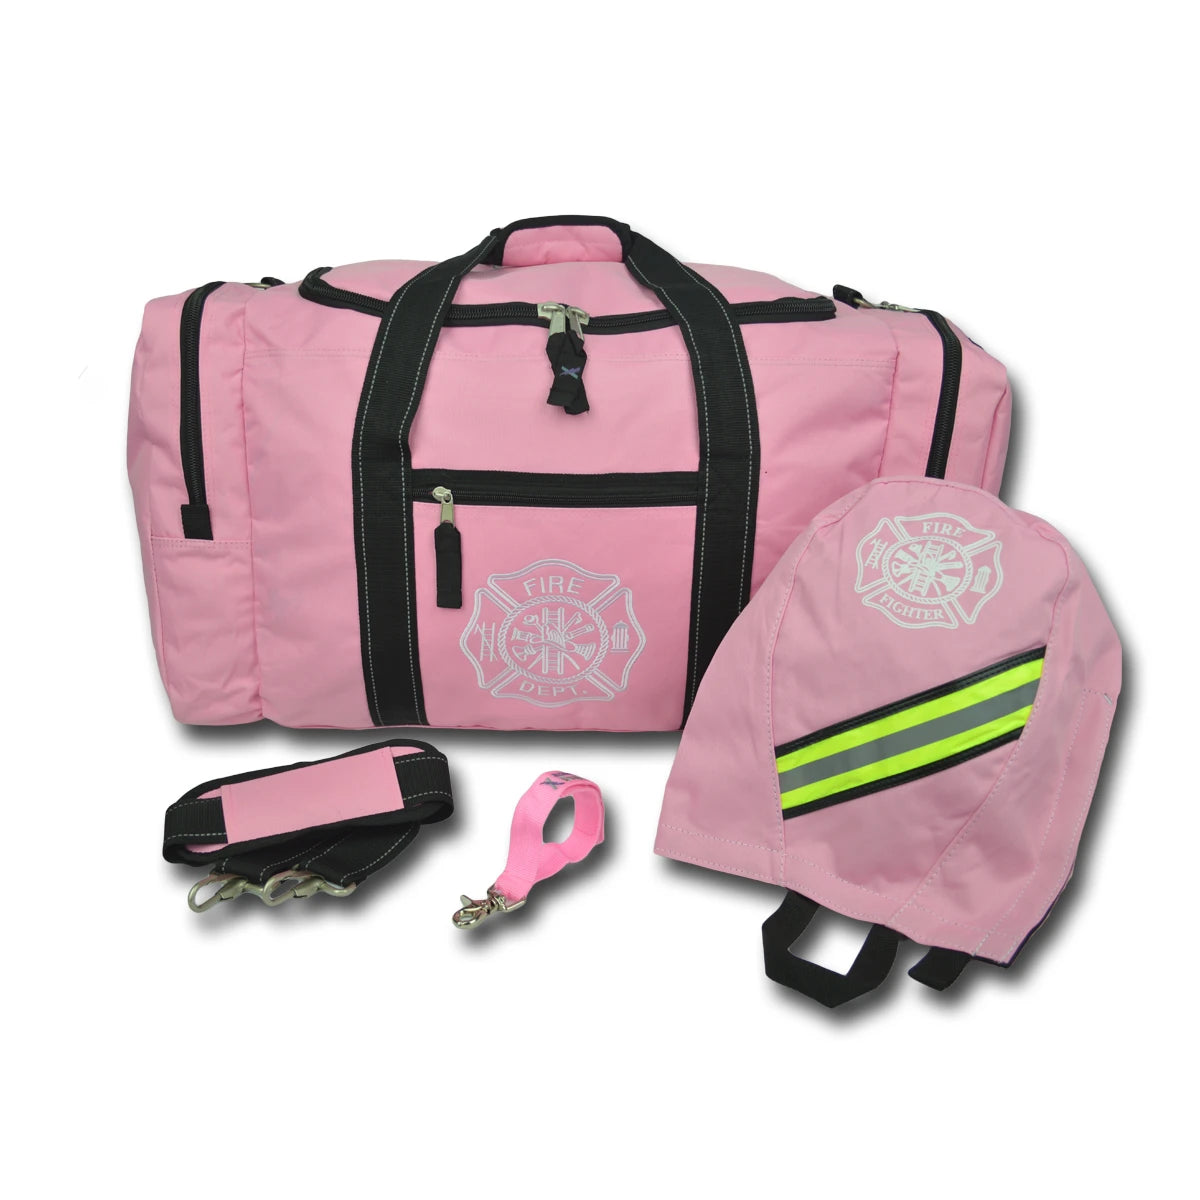 Value Step-In Turnout Gear Bag Package – Including Turnout Bag, SCBA Mask Bag, Shoulder Strap & Glove Holder